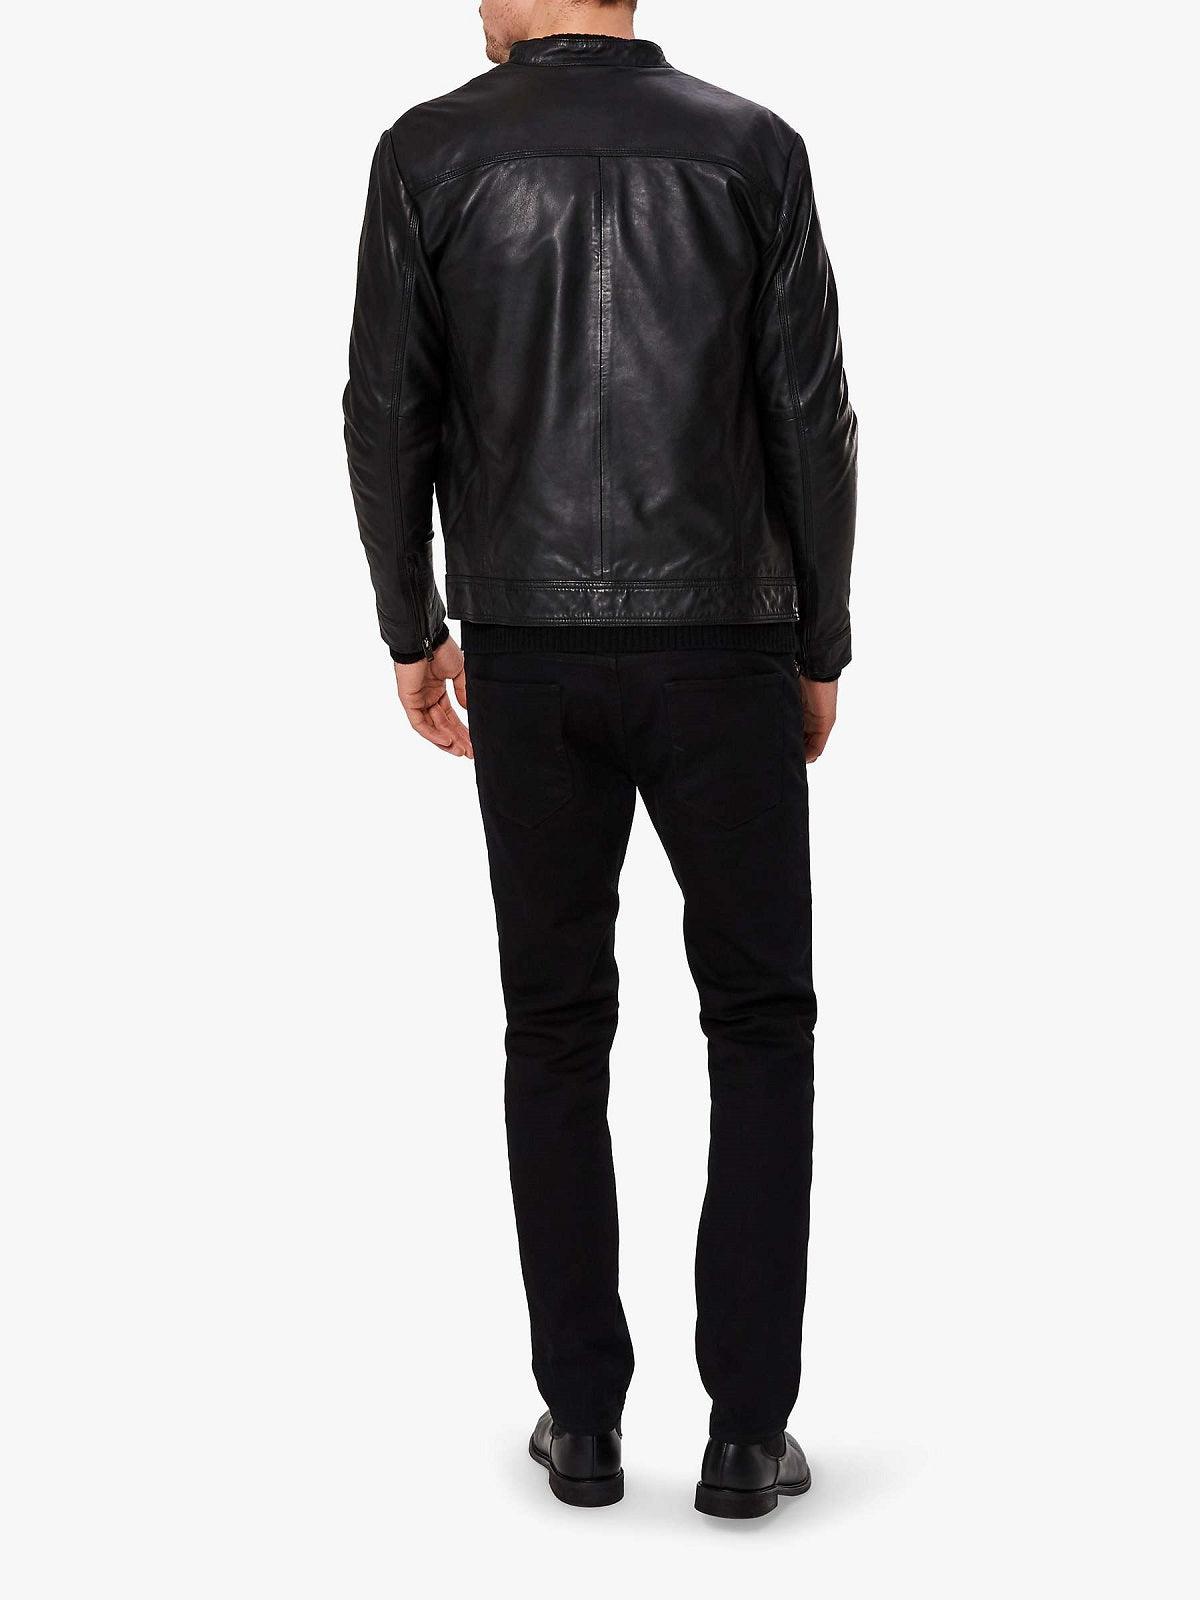 Majestic Black Jacket For Men - Leather Loom